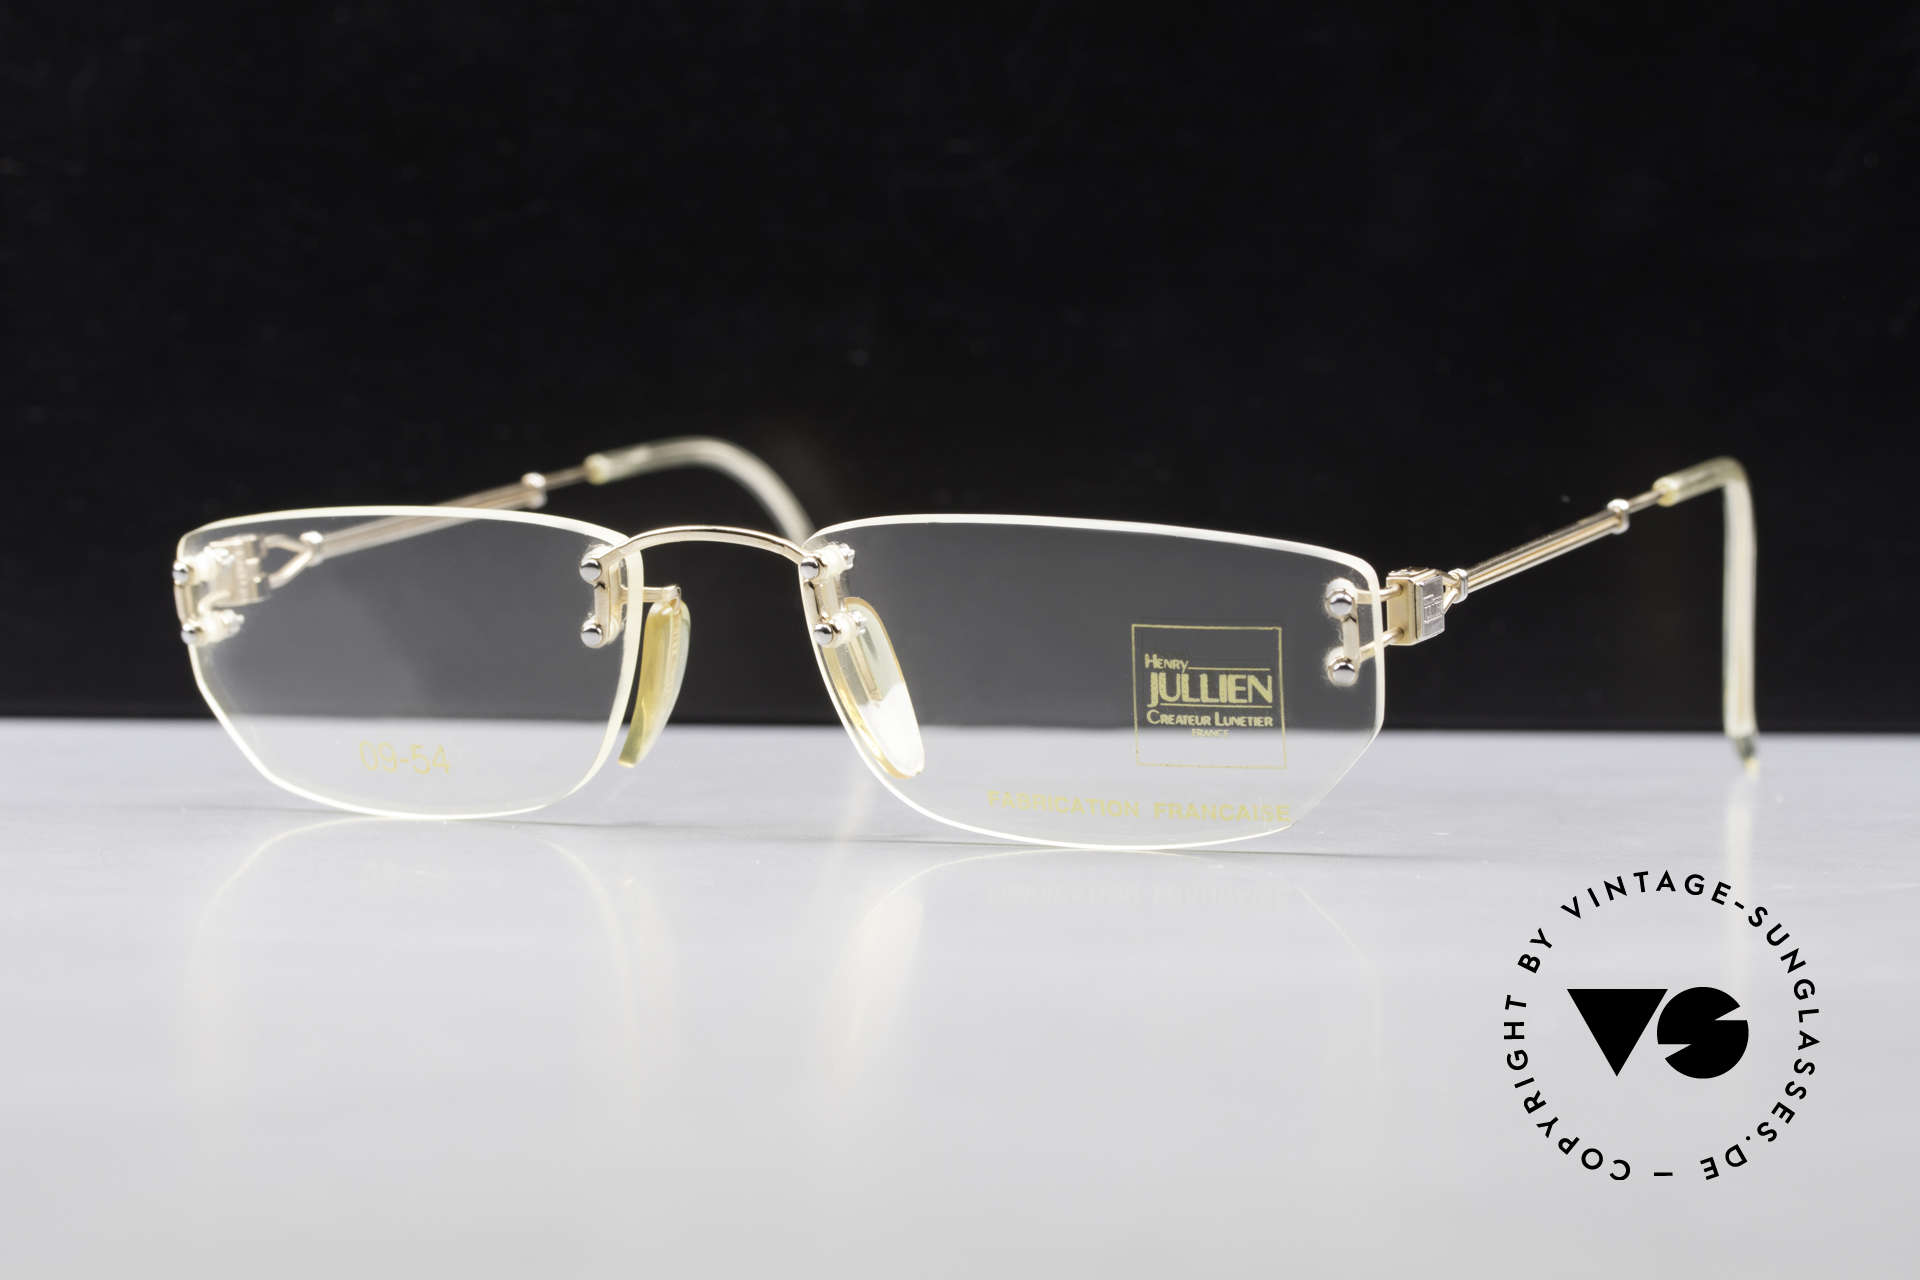 Henry Jullien Melrose 09 Rimless Vintage Frame 1994, rimless vintage eyeglass-frame by HENRY JULLIEN, Made for Women